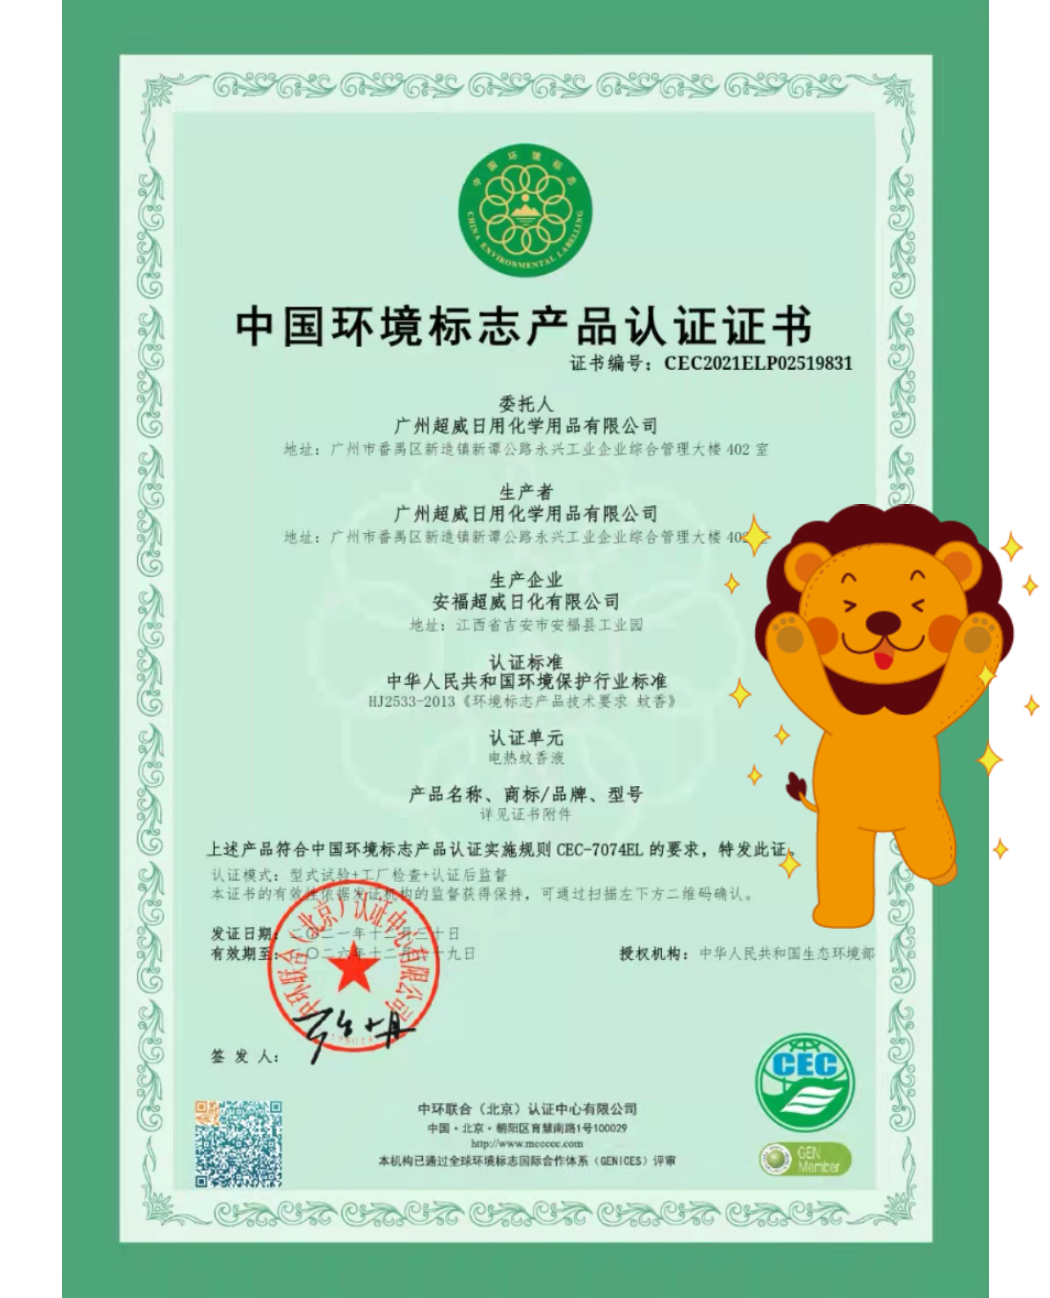 朝云集团（6601.HK）获授中国环境标志产品认证，产品质量和产品生产环境行为获官方认可